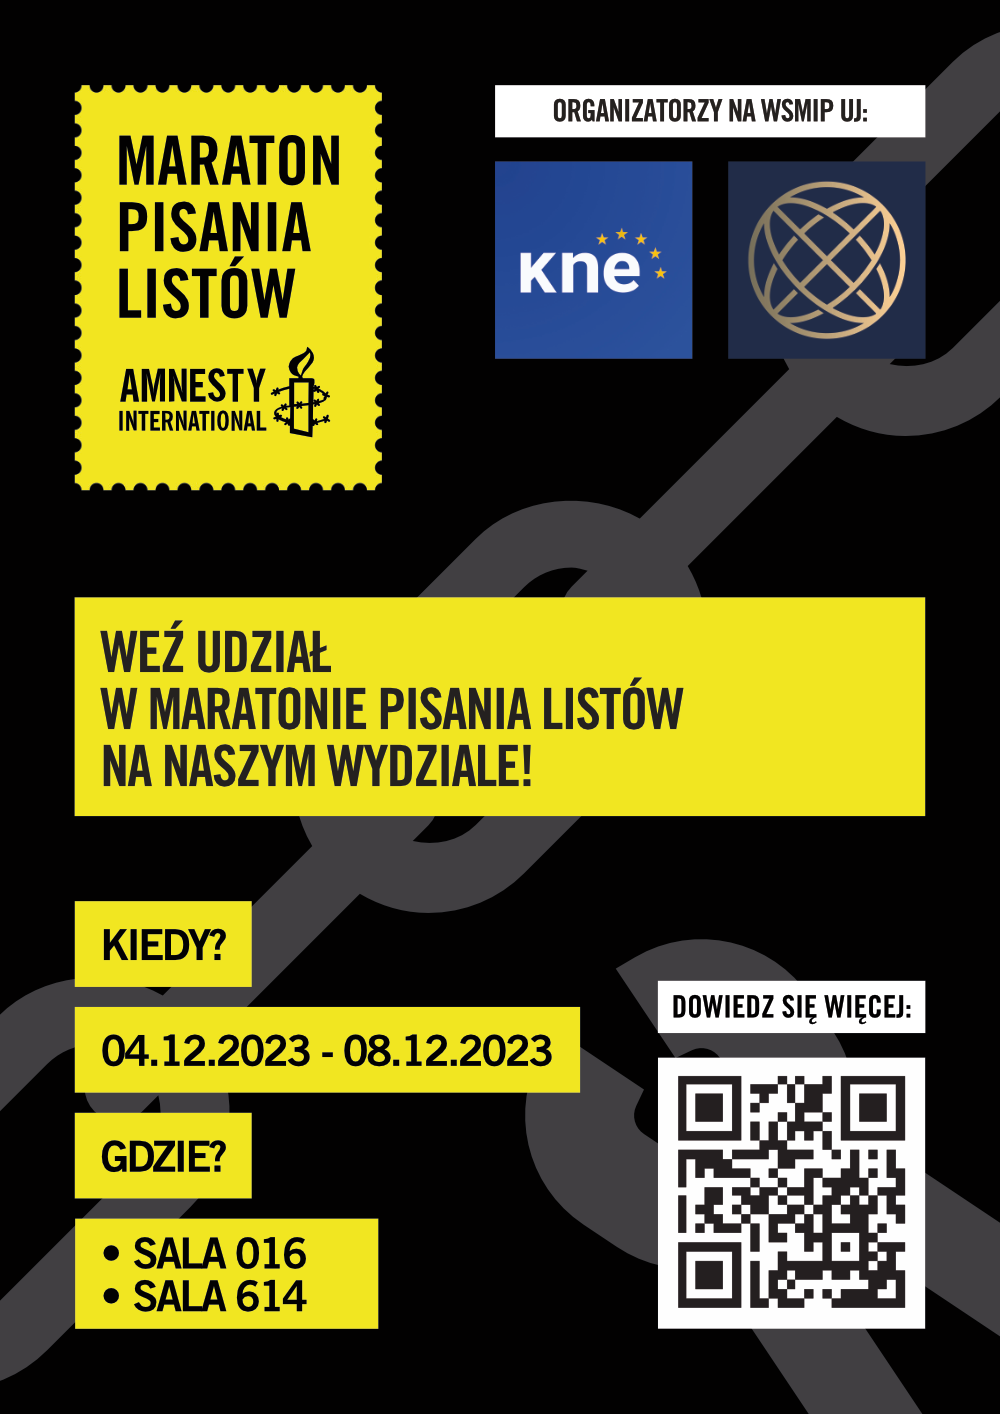 zaproszenie do Maratonu pisania listów Amnesty International